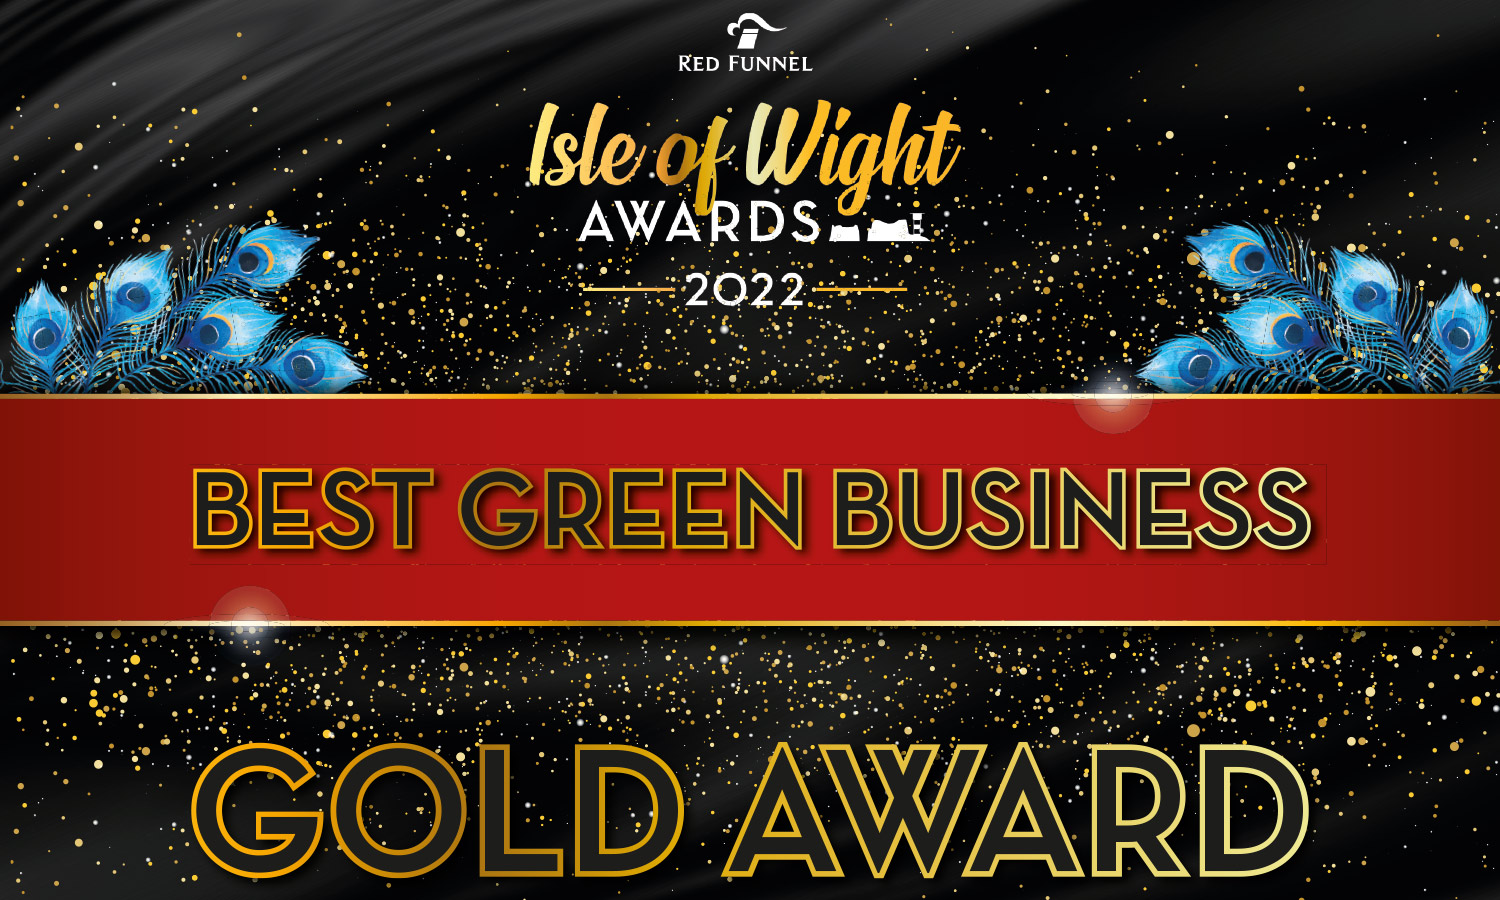 My Isle of Wight Best Green Business 2022 winner